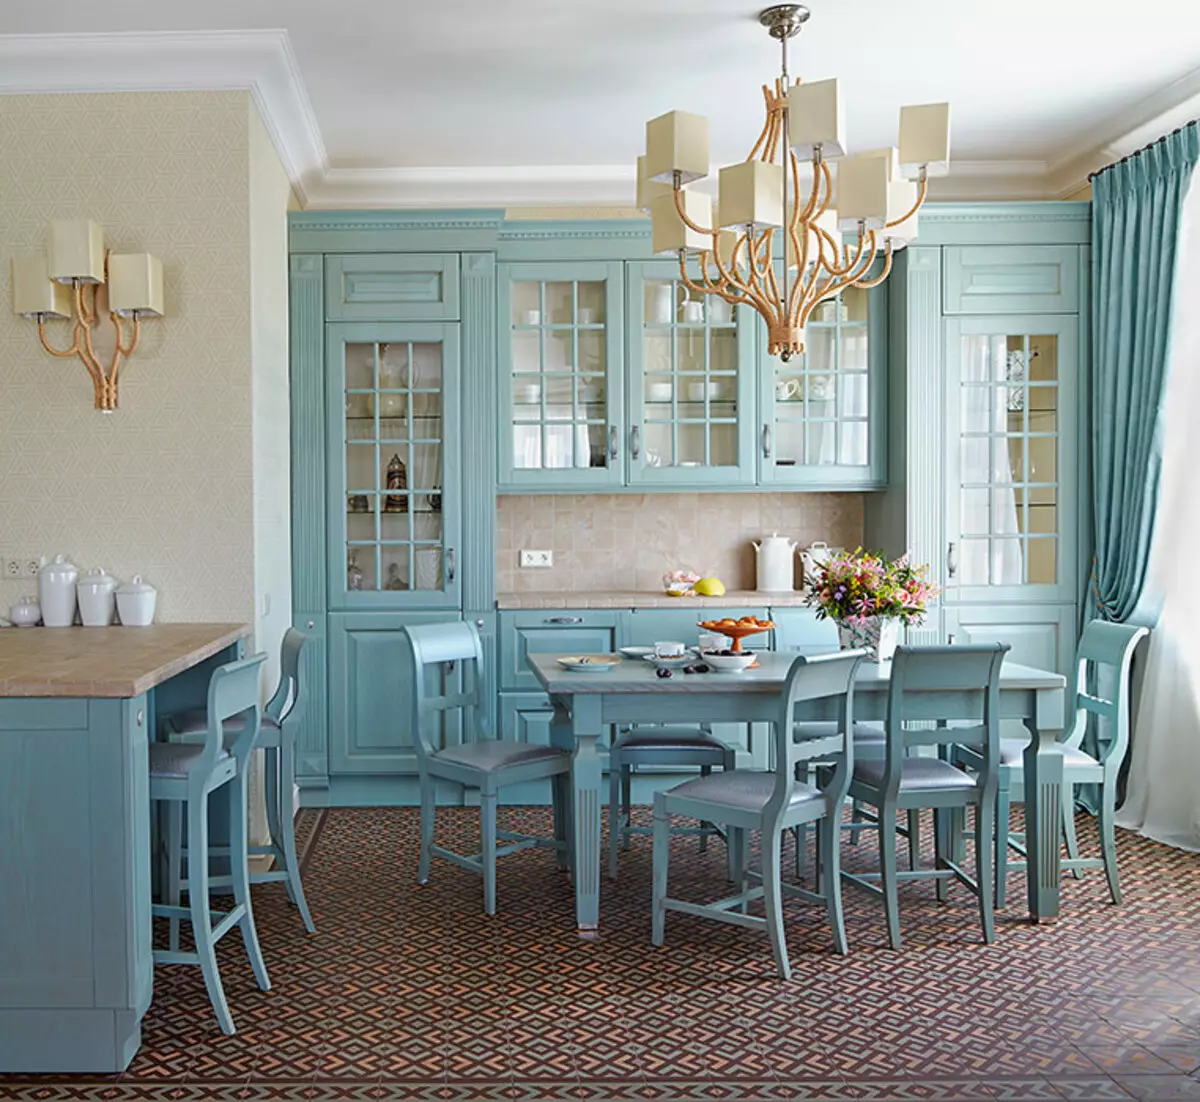 Bucătărie albastră (82 fotografii): Ce culori sunt combinate în interiorul unui set de bucătărie albastră? Design de bucătărie în tonuri albastre ușoare și întunecate 9555_59